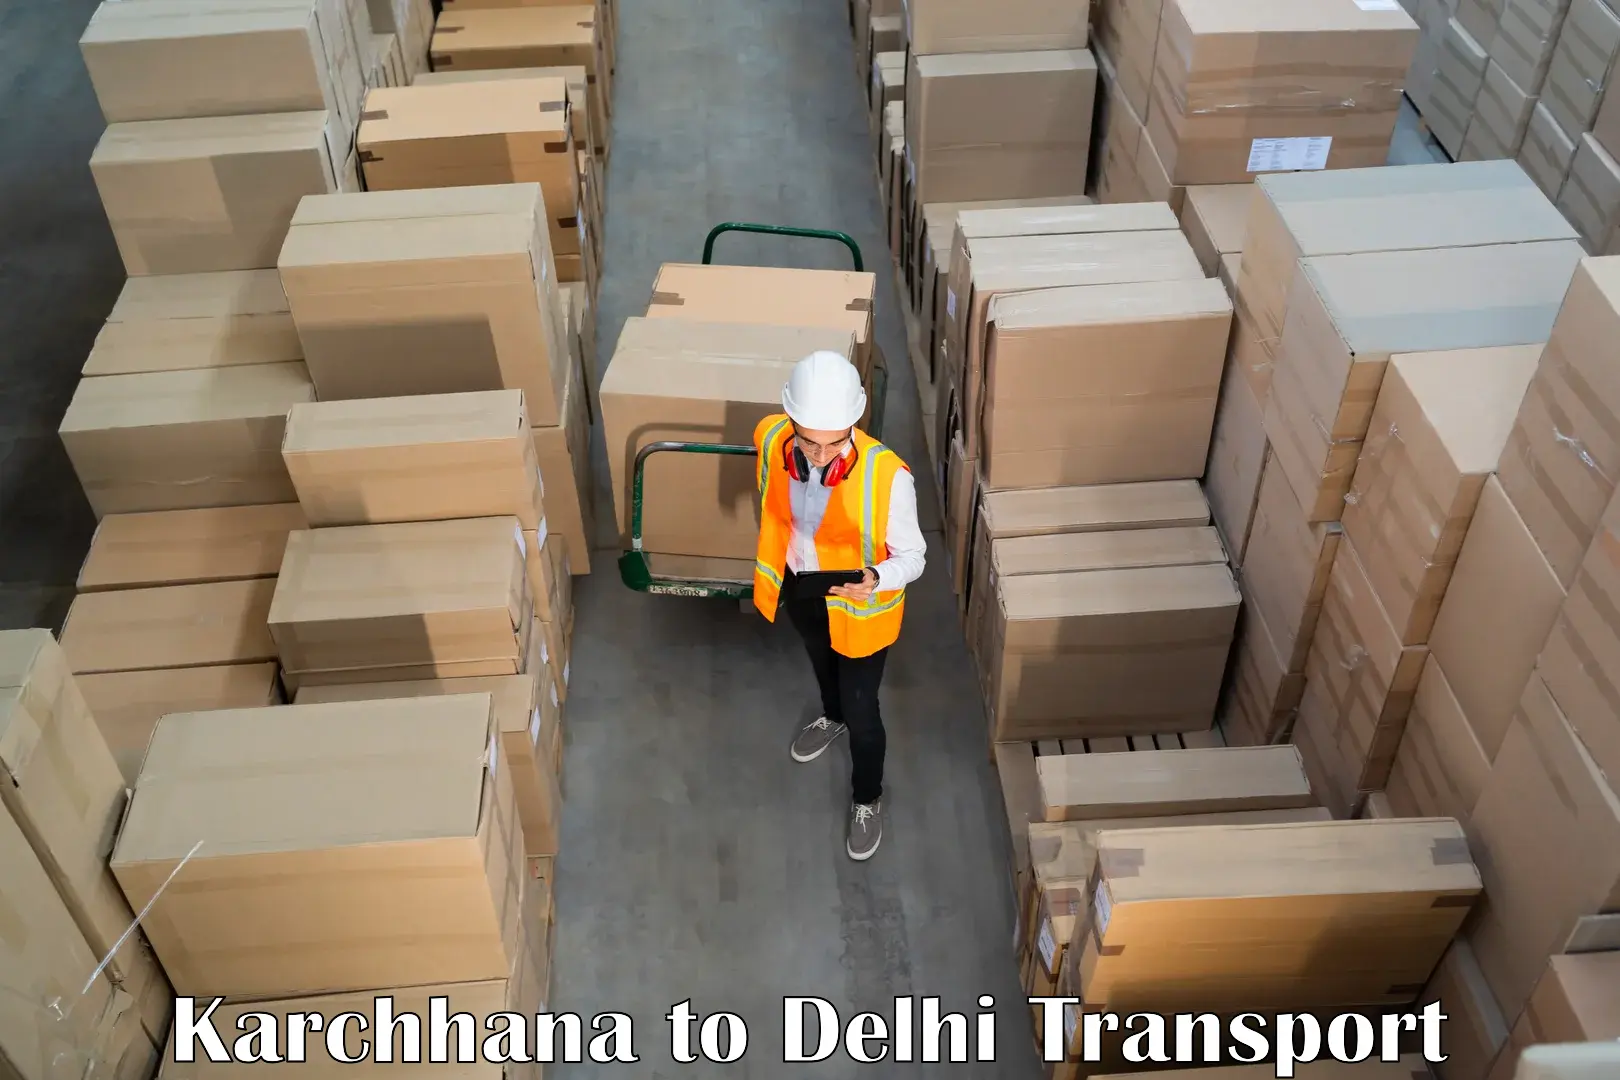 Road transport online services Karchhana to Delhi Technological University DTU